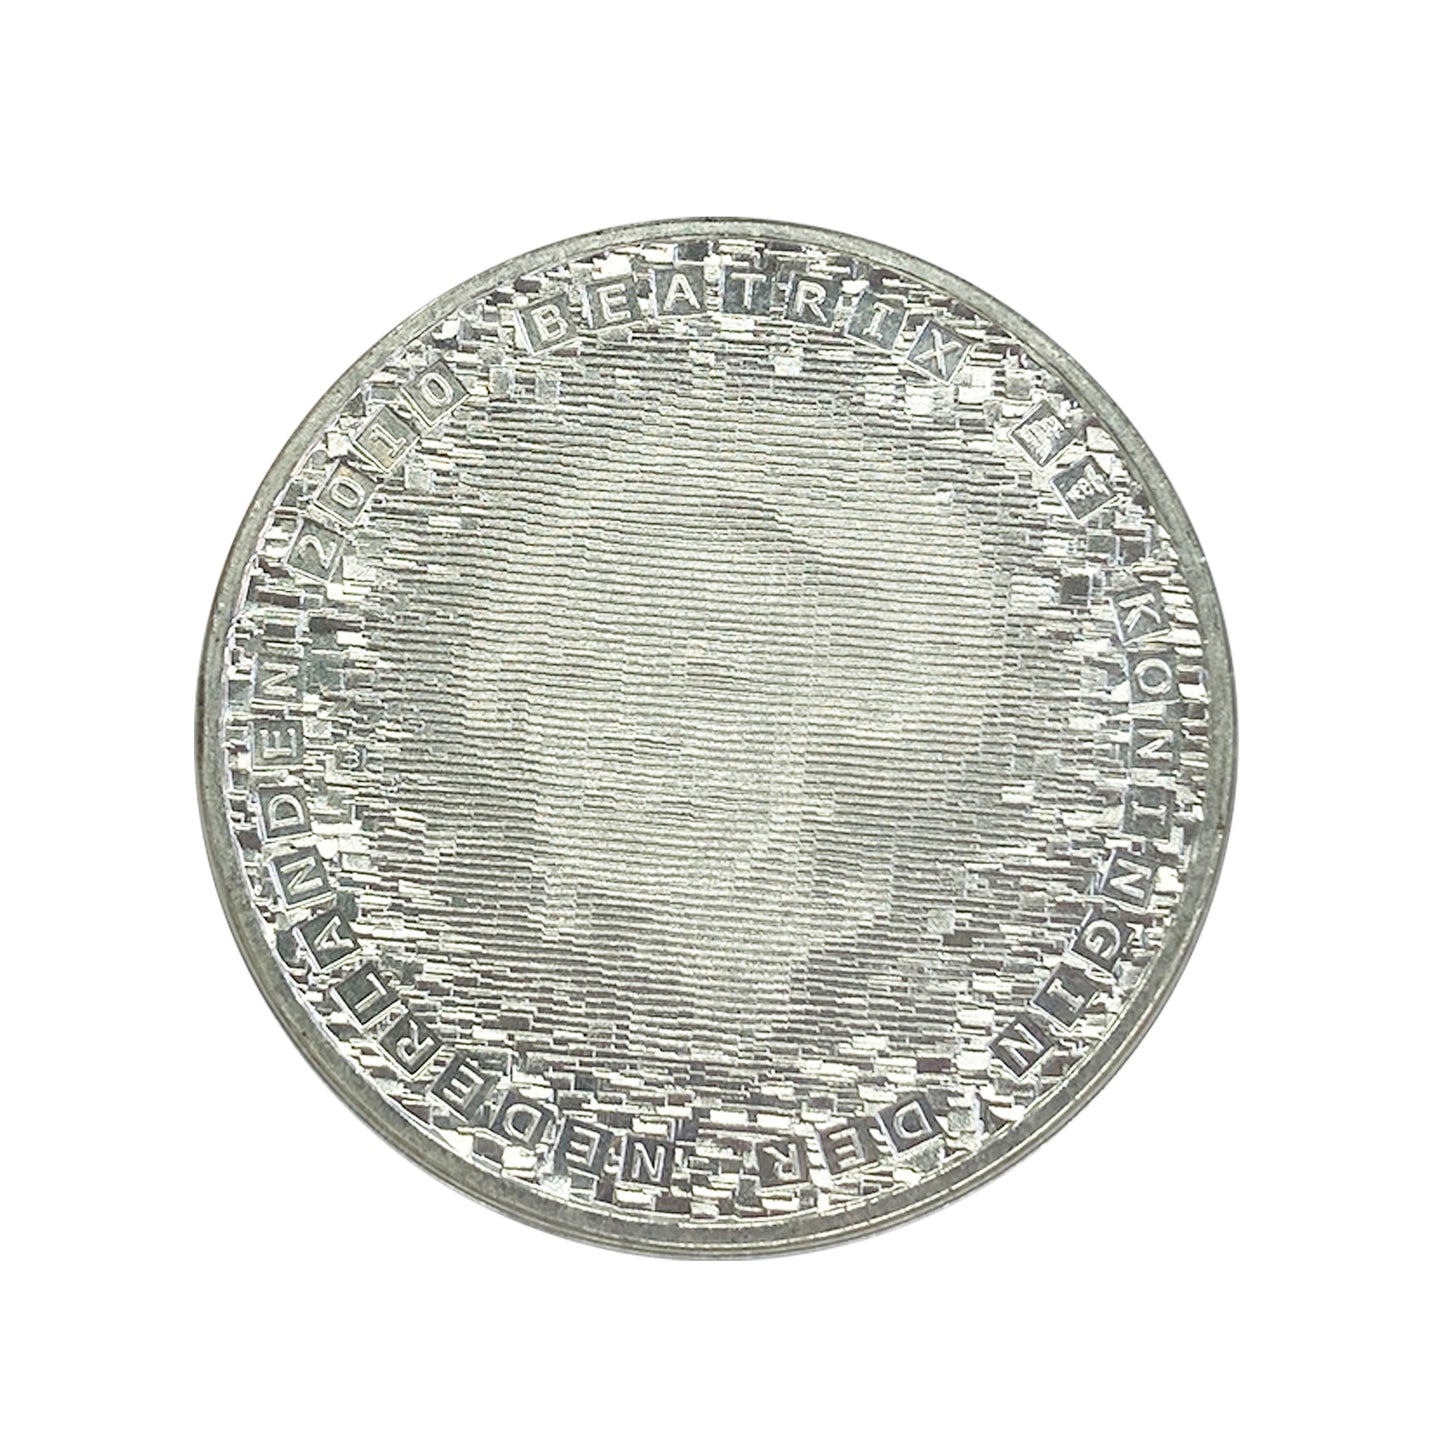 Países Bajos - Moneda 5 euros 2010 - 150 Aniversario de Max Havelaar